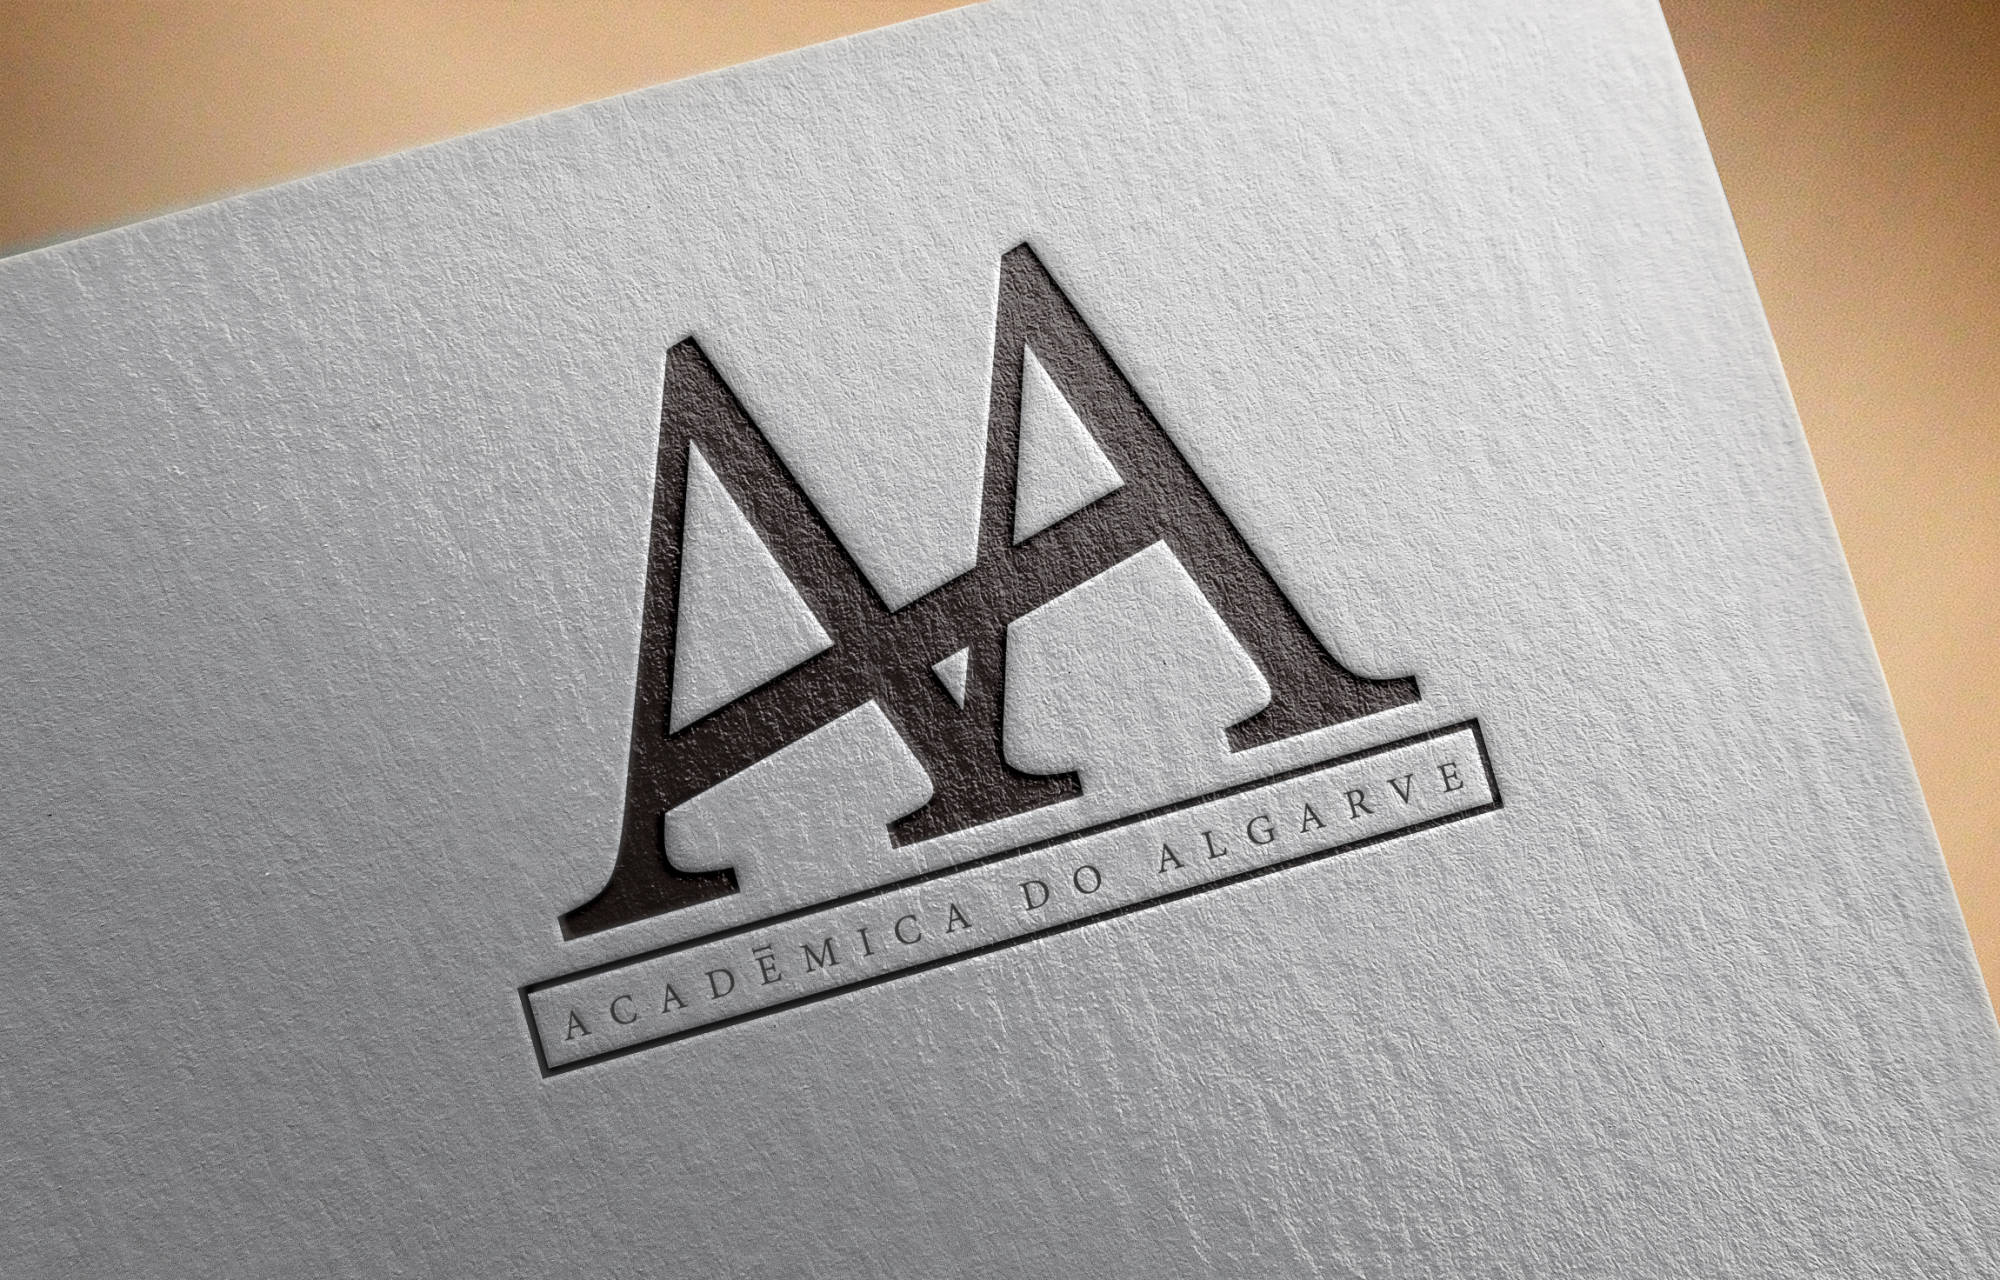 Loja Académica do Algarve - Logo design